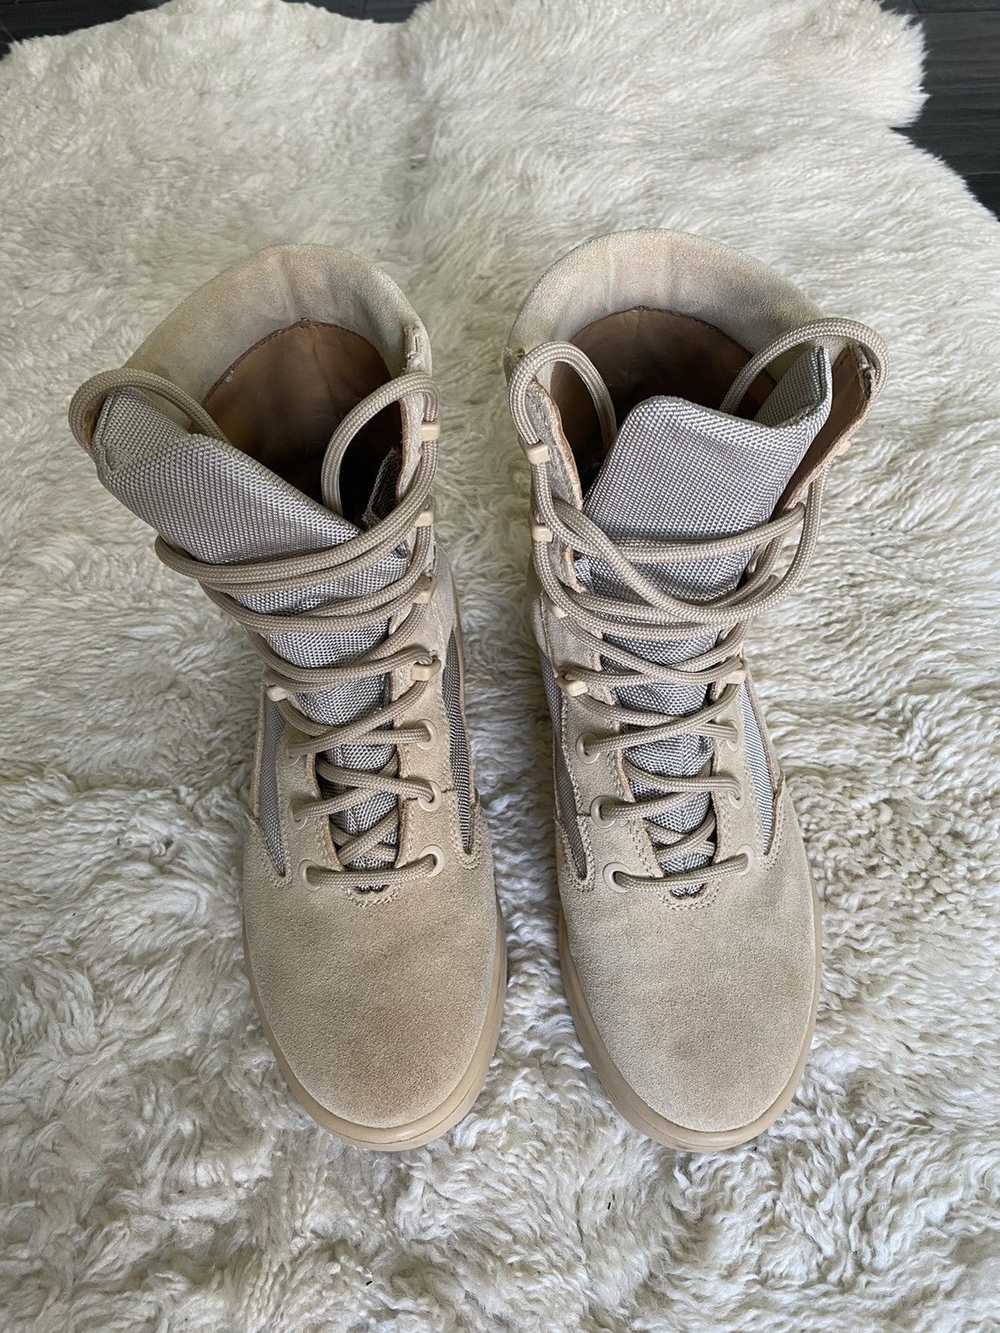 Yeezy Season Yeezy Season 4 Military Combat Boots - image 2